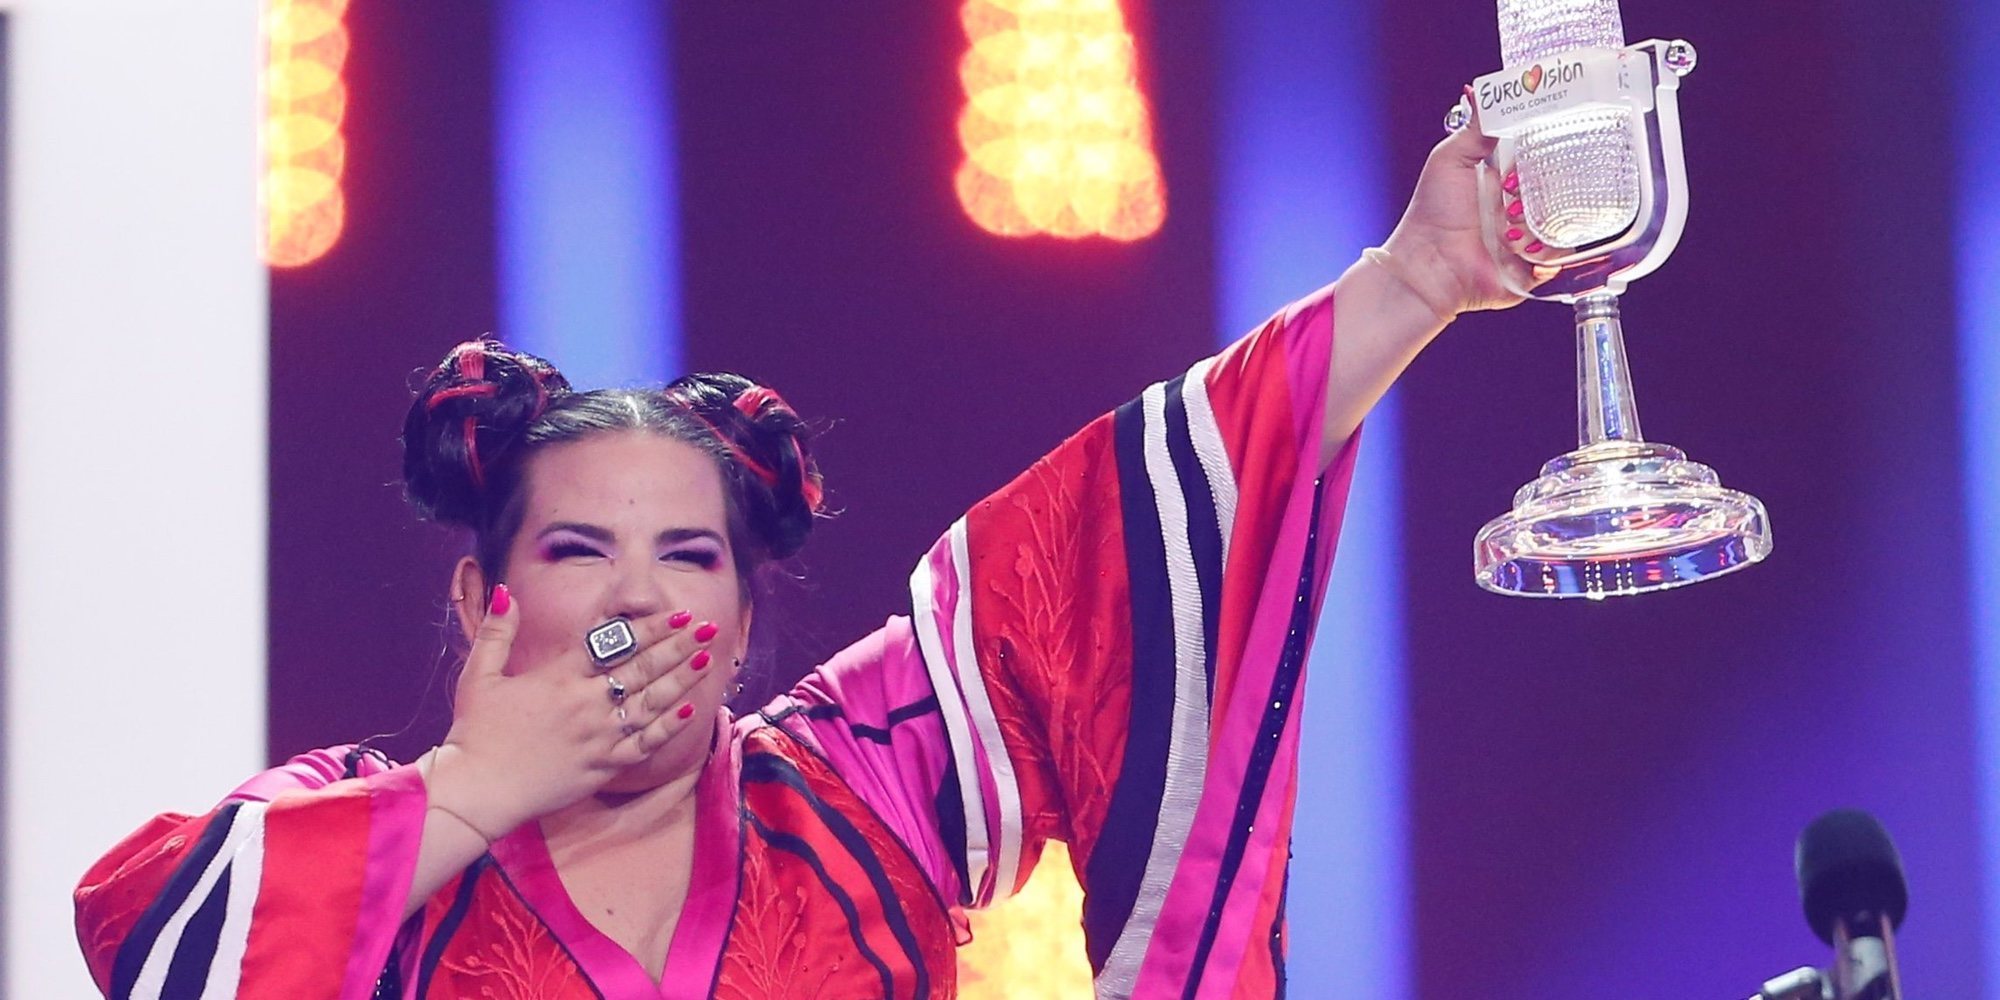 Israel gana el Festival de Eurovisión 2018 con Netta Barzilai y su 'Toy'